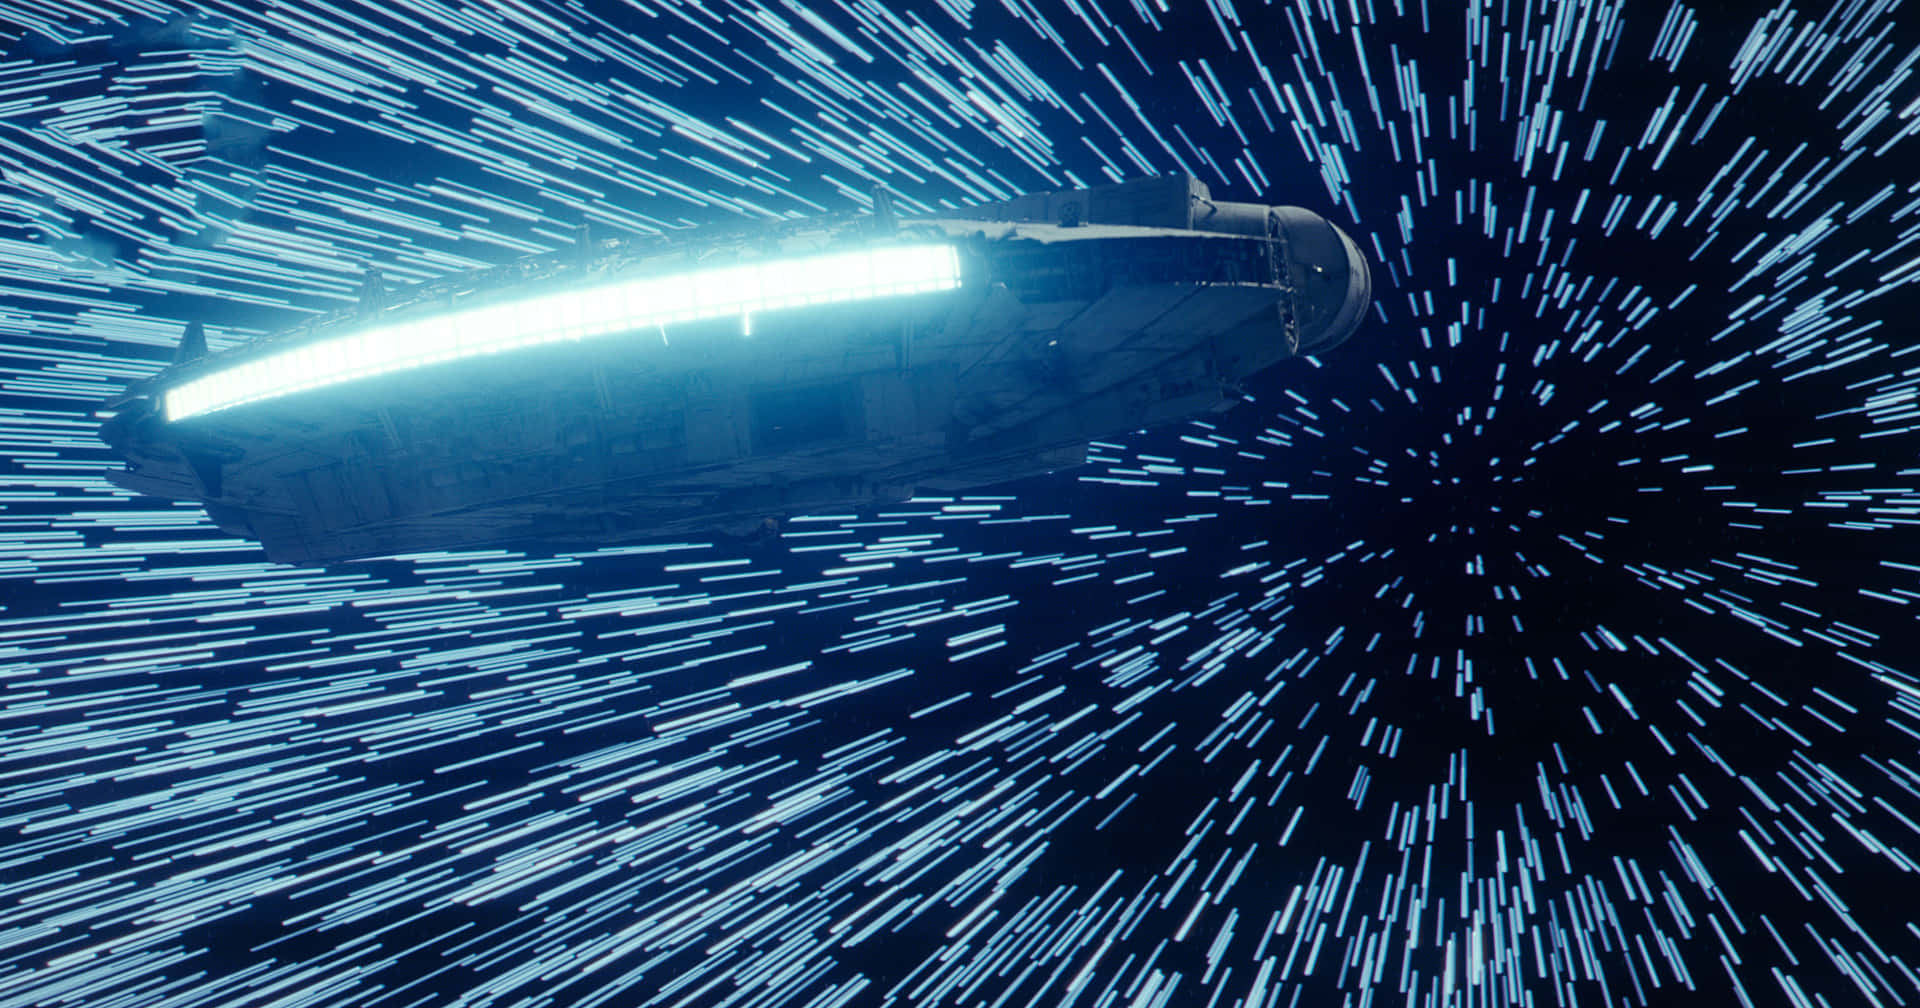 Dielegendäre Sternenflotte Millenium Falke Von Star Wars Wallpaper